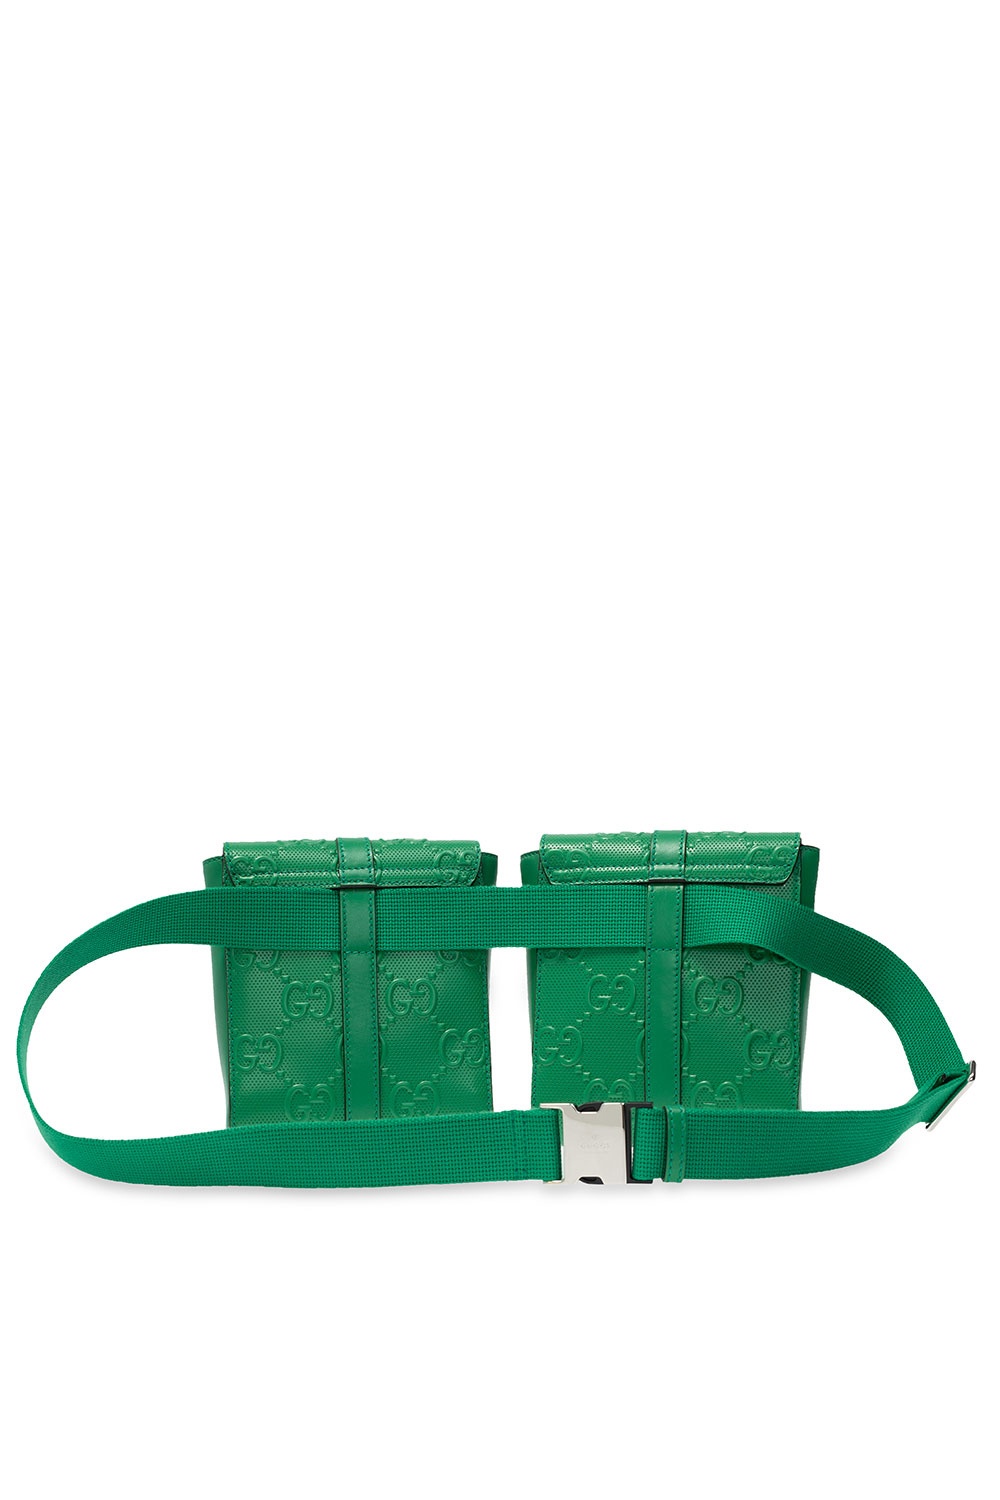 gucci belt bag green